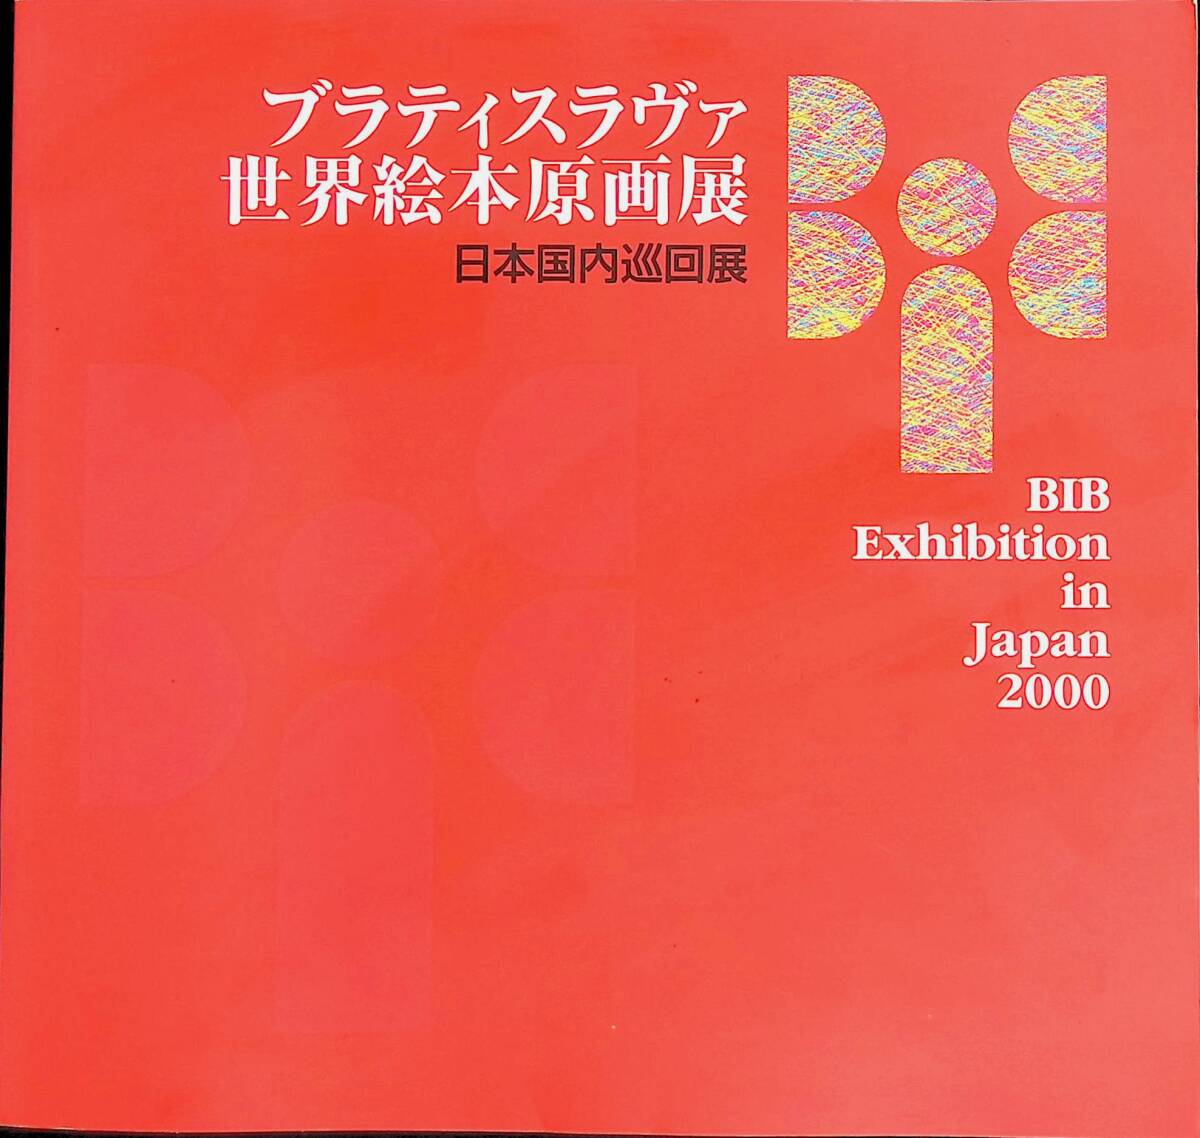 Catálogo de la Feria Mundial del Libro Infantil de Bratislava, Exposición de la gira nacional de Japón, Junta Internacional de Libros para Jóvenes, 2000, YB240418M1, Cuadro, Libro de arte, Recopilación, Catalogar